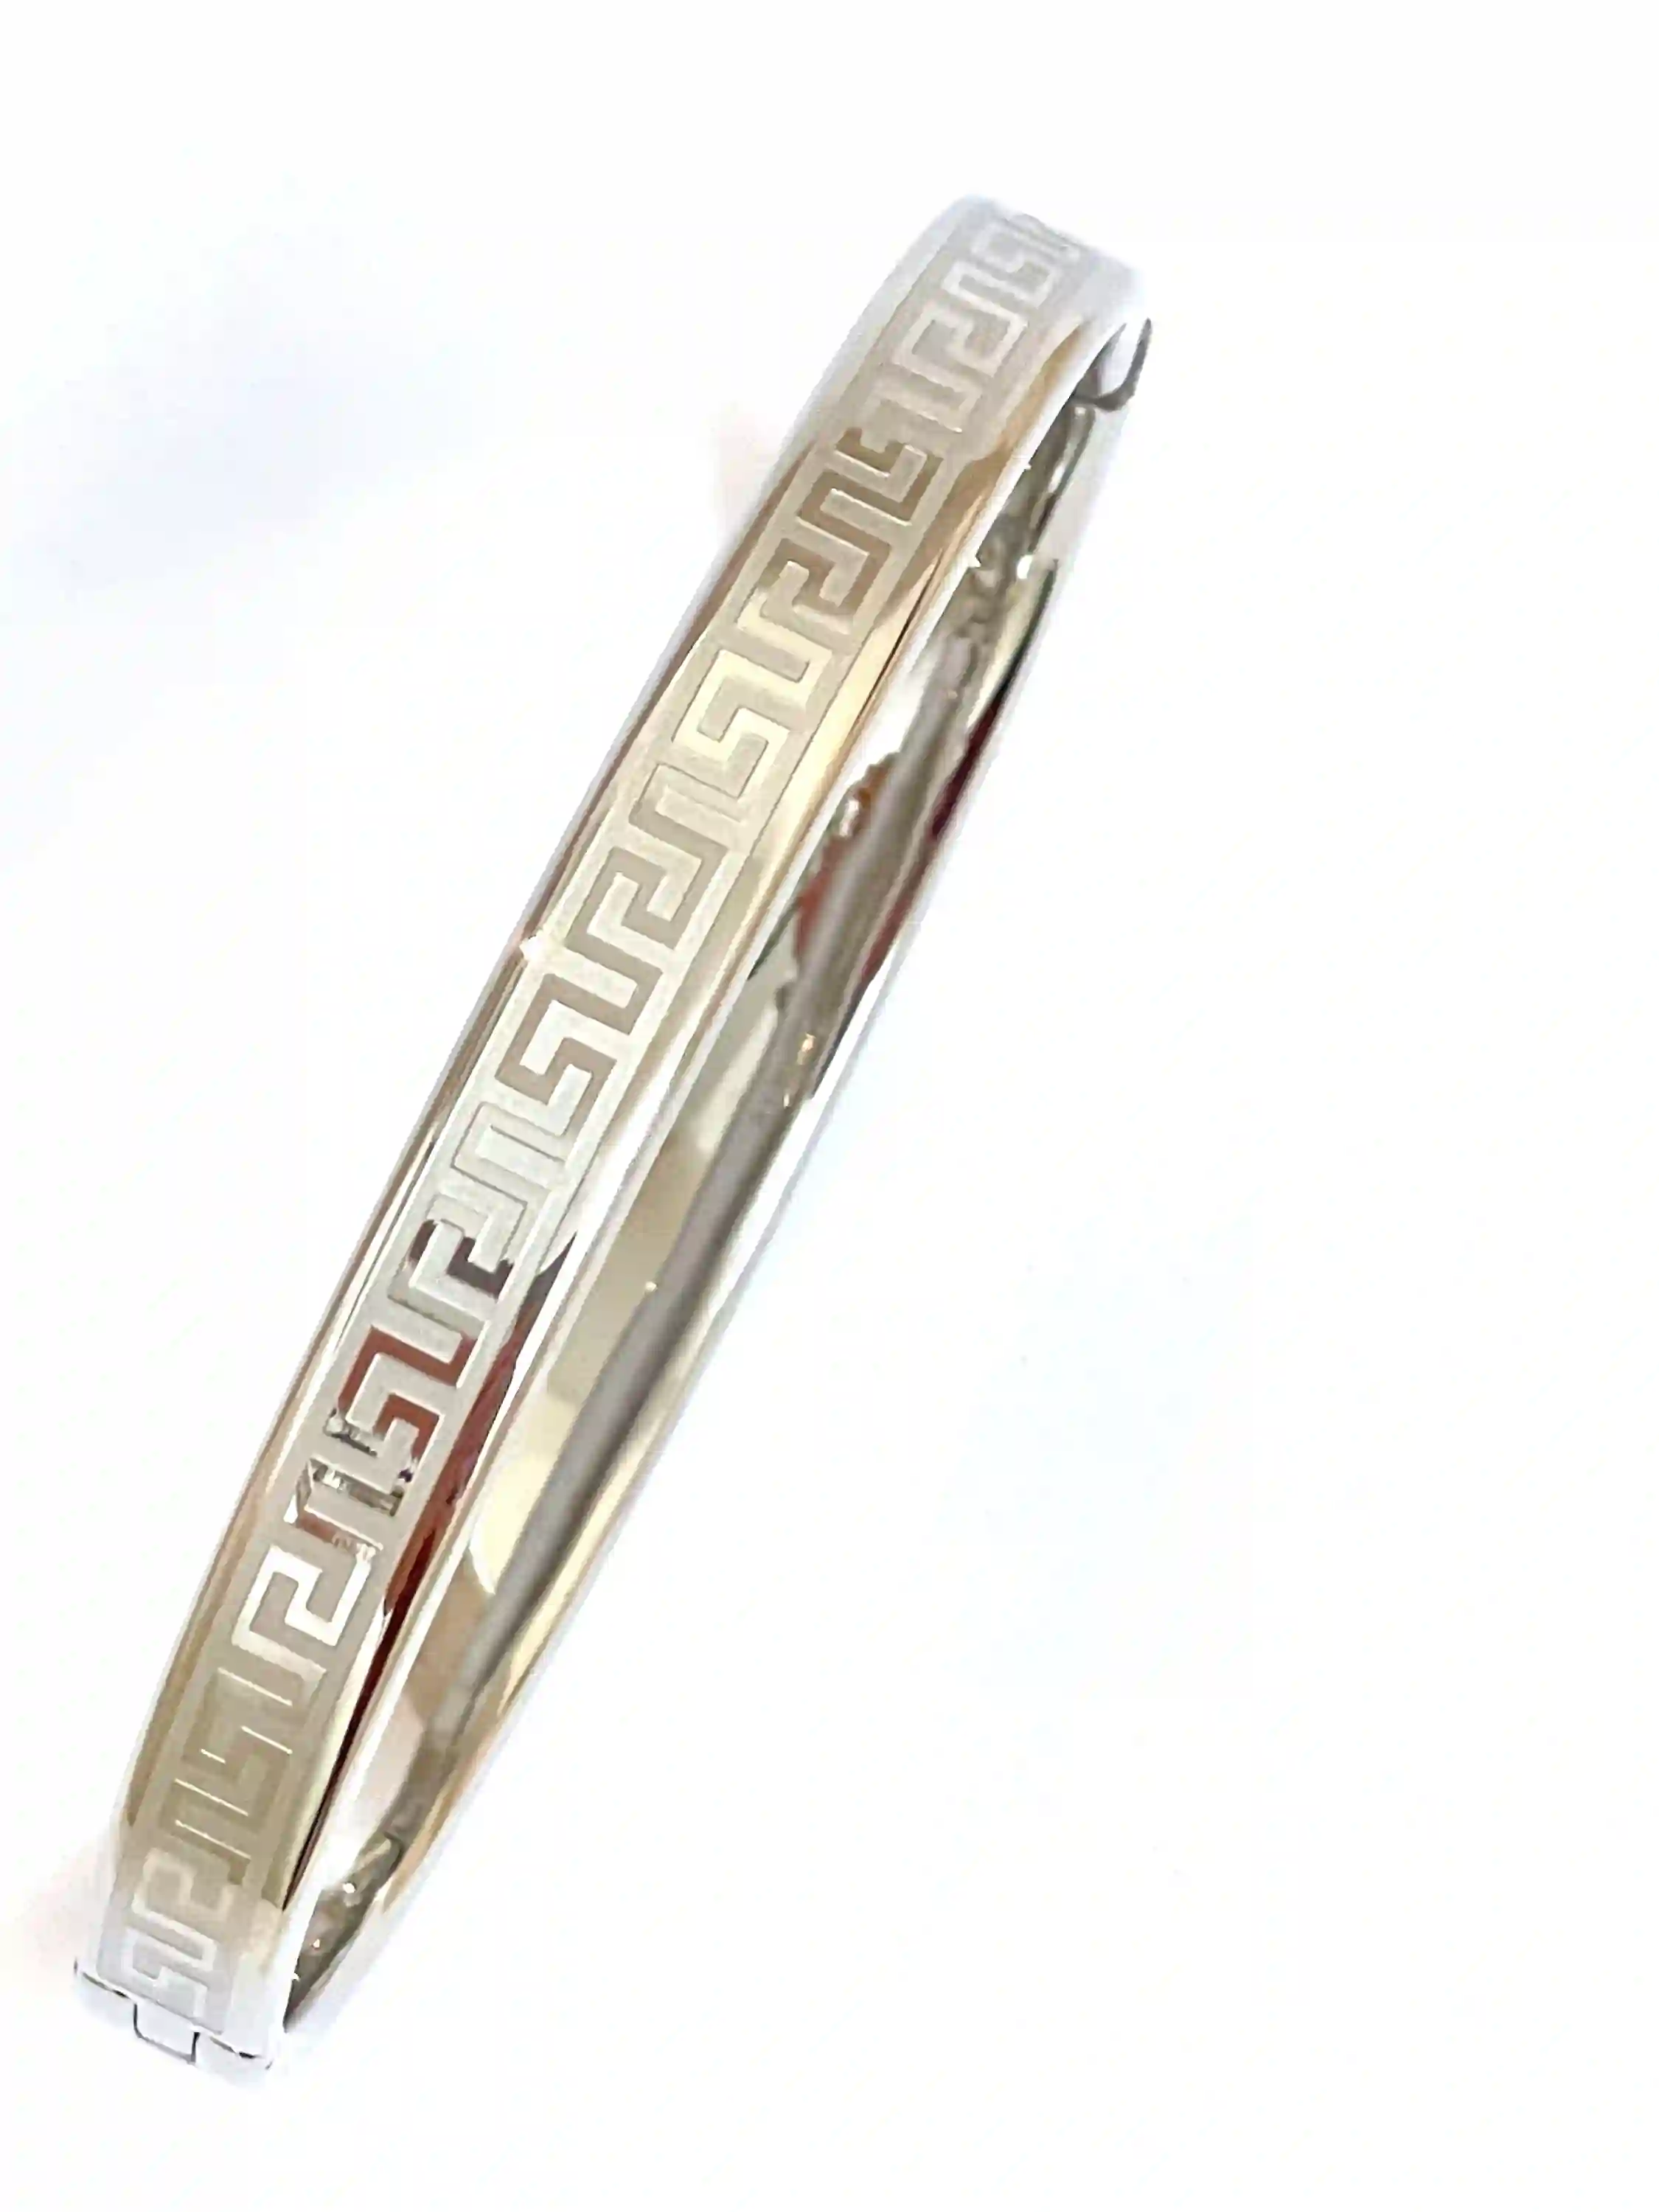 Silver Bangle Bracelet for women/Greek Key Bracelet/Meander Bracelet/Greek Key Bangle/Greek Jewelry/Birthday Gift for Her Friend Teacher mum 